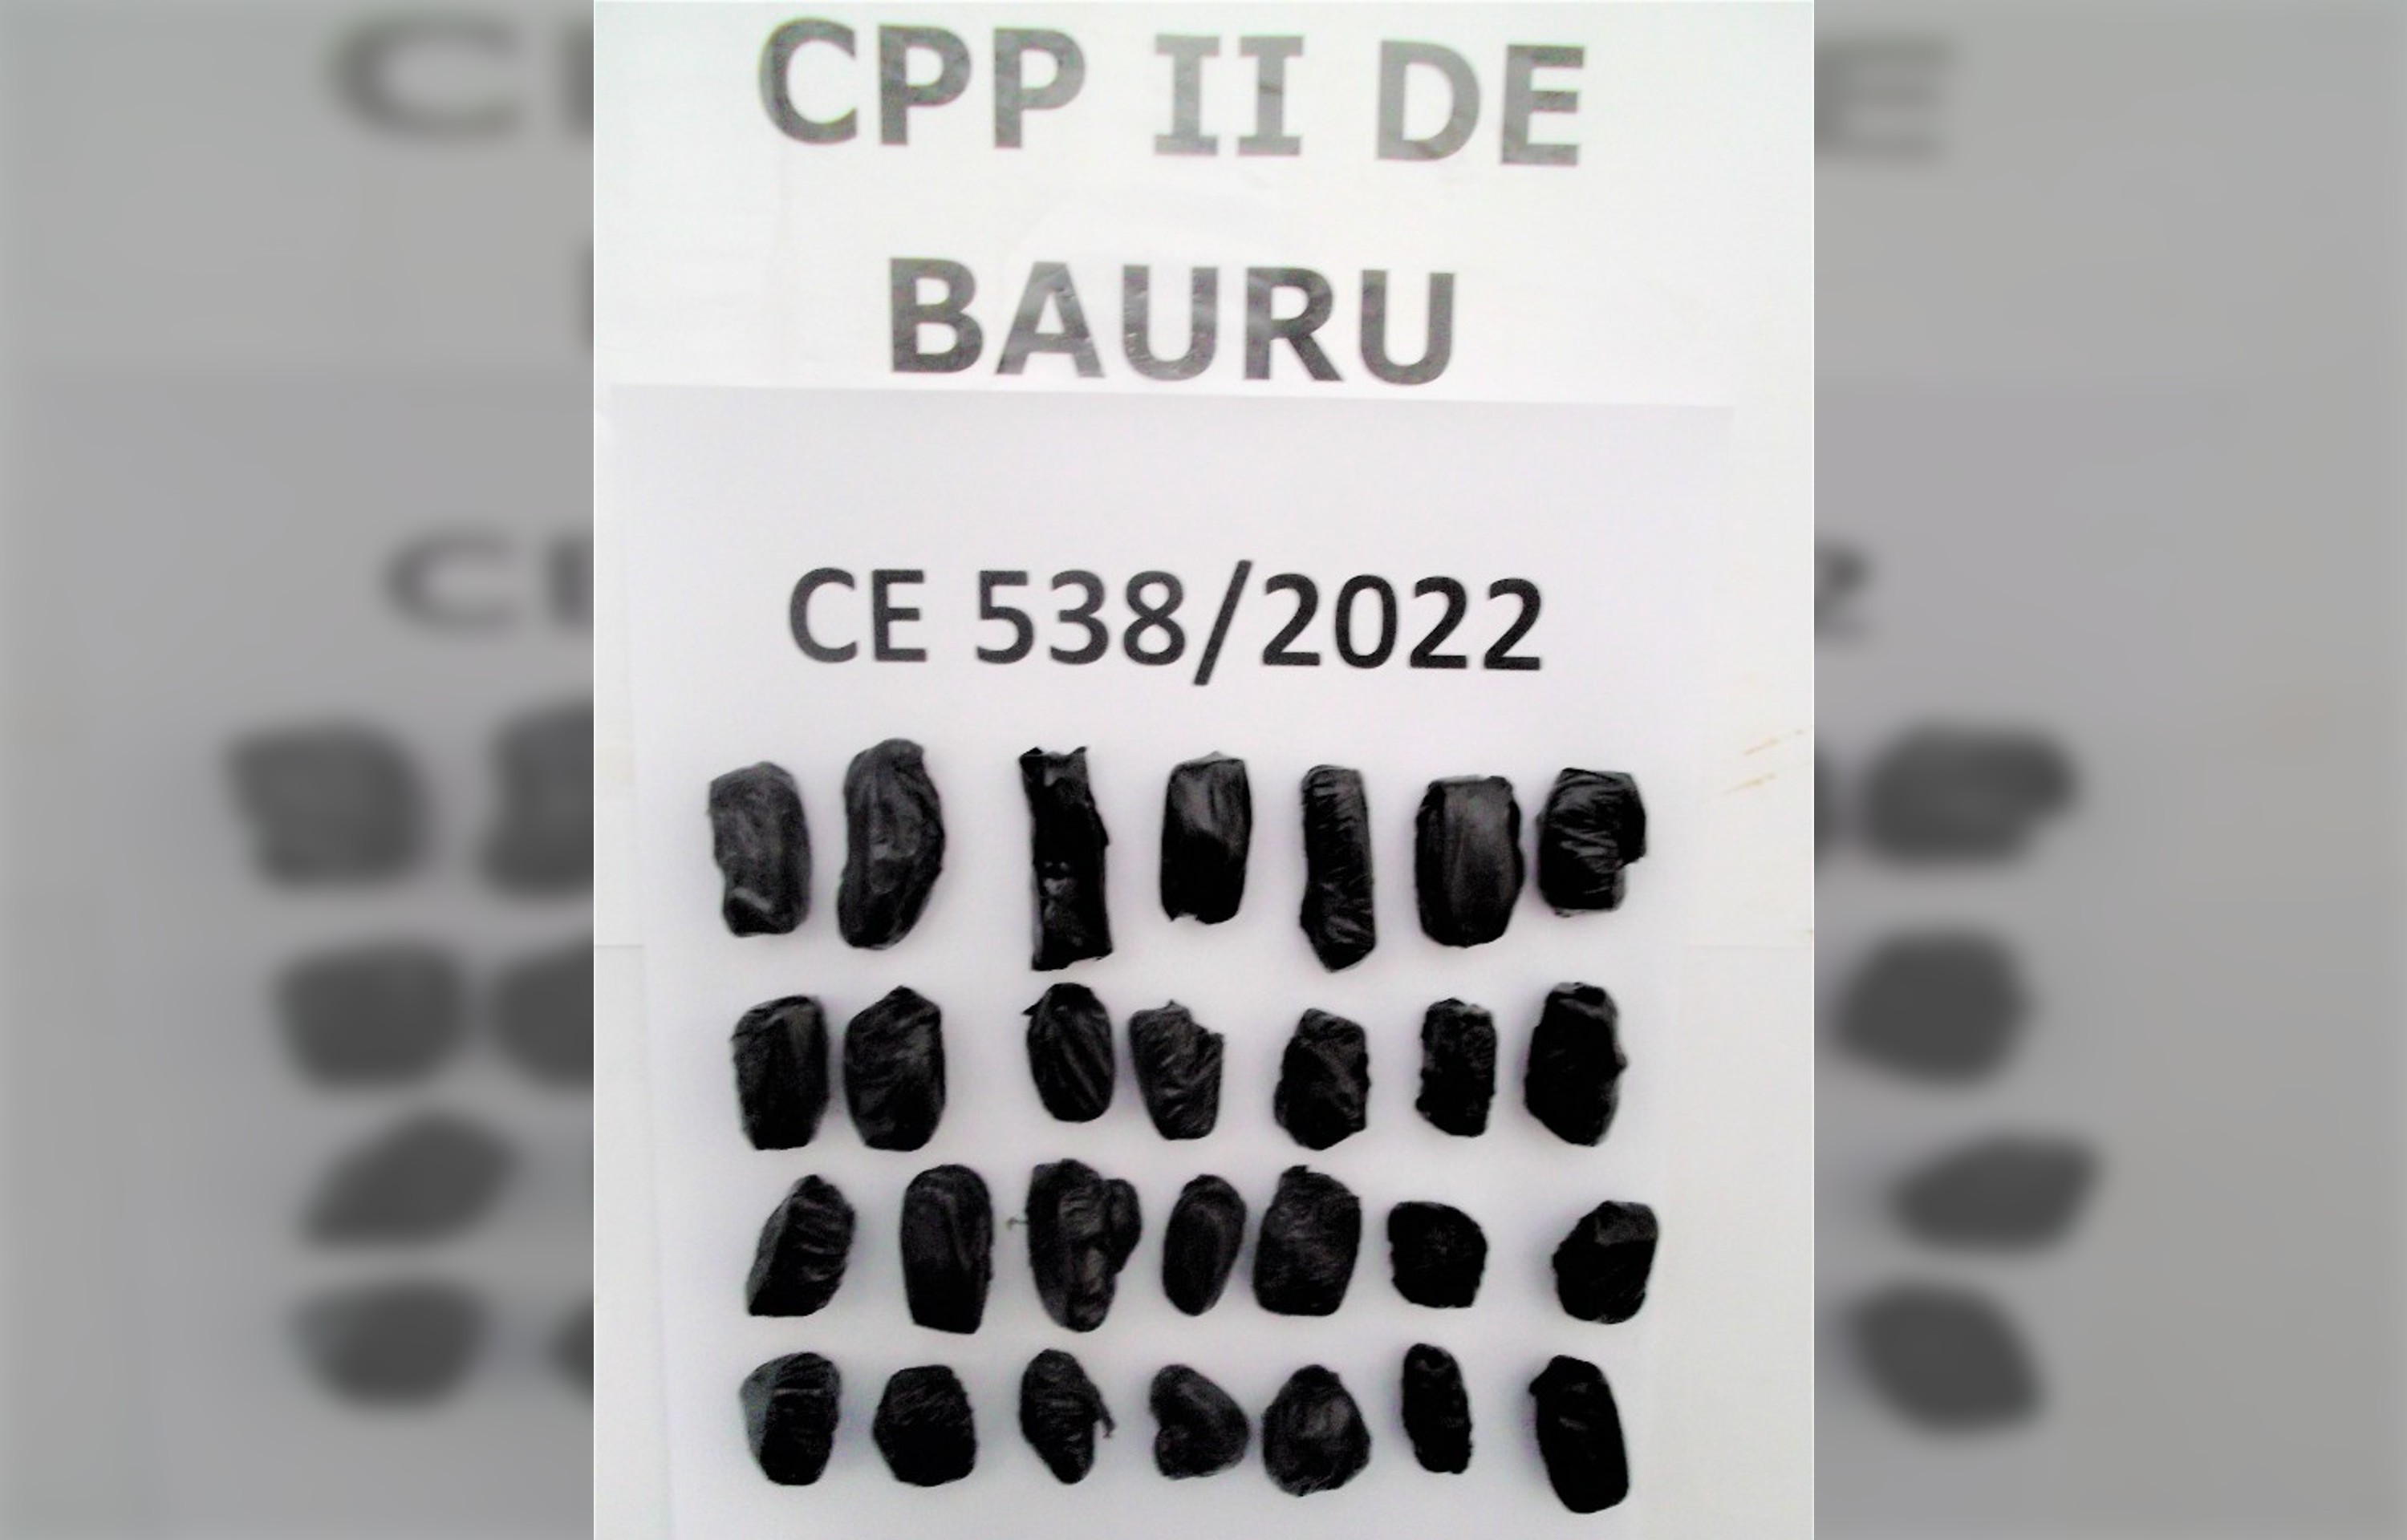 Quarteto de presos tenta entrar em presídio de Bauru com quase 80 porções de maconha no estômago